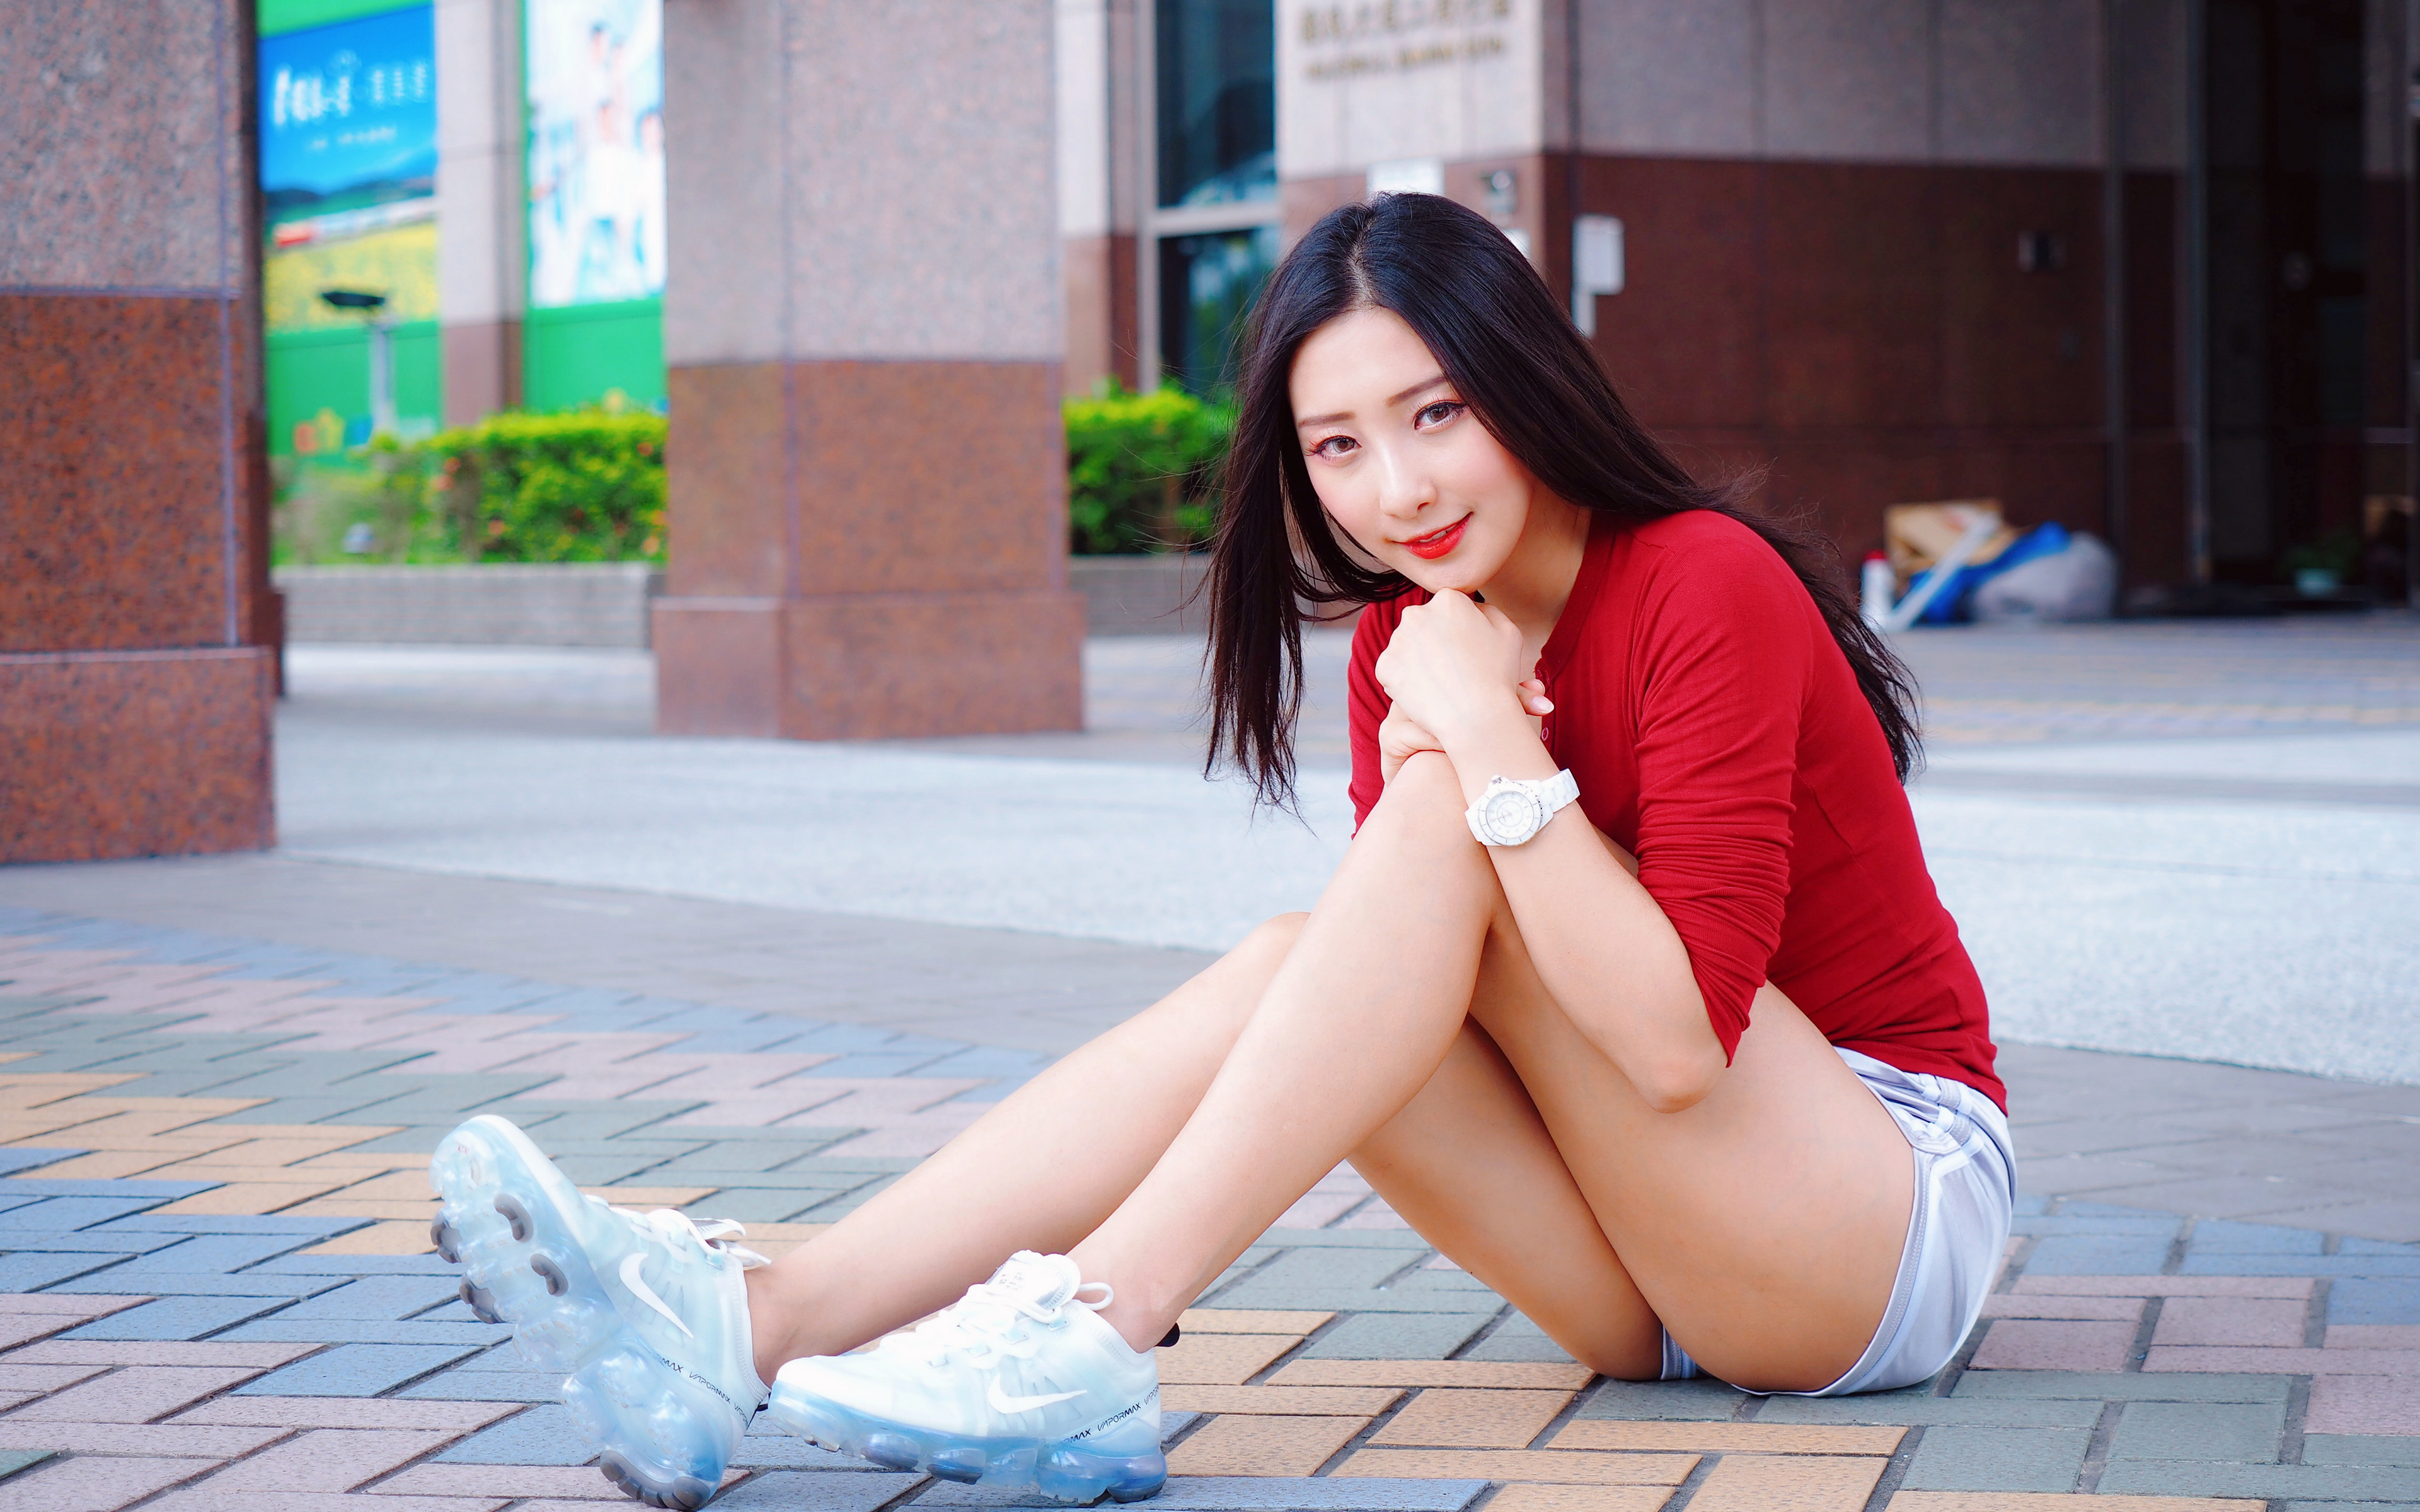 Фотография Блузка Девушки Ноги Азиаты сидя Шорты 3840x2400 девушка молодая женщина молодые женщины ног азиатки азиатка шорт Сидит шортах сидящие